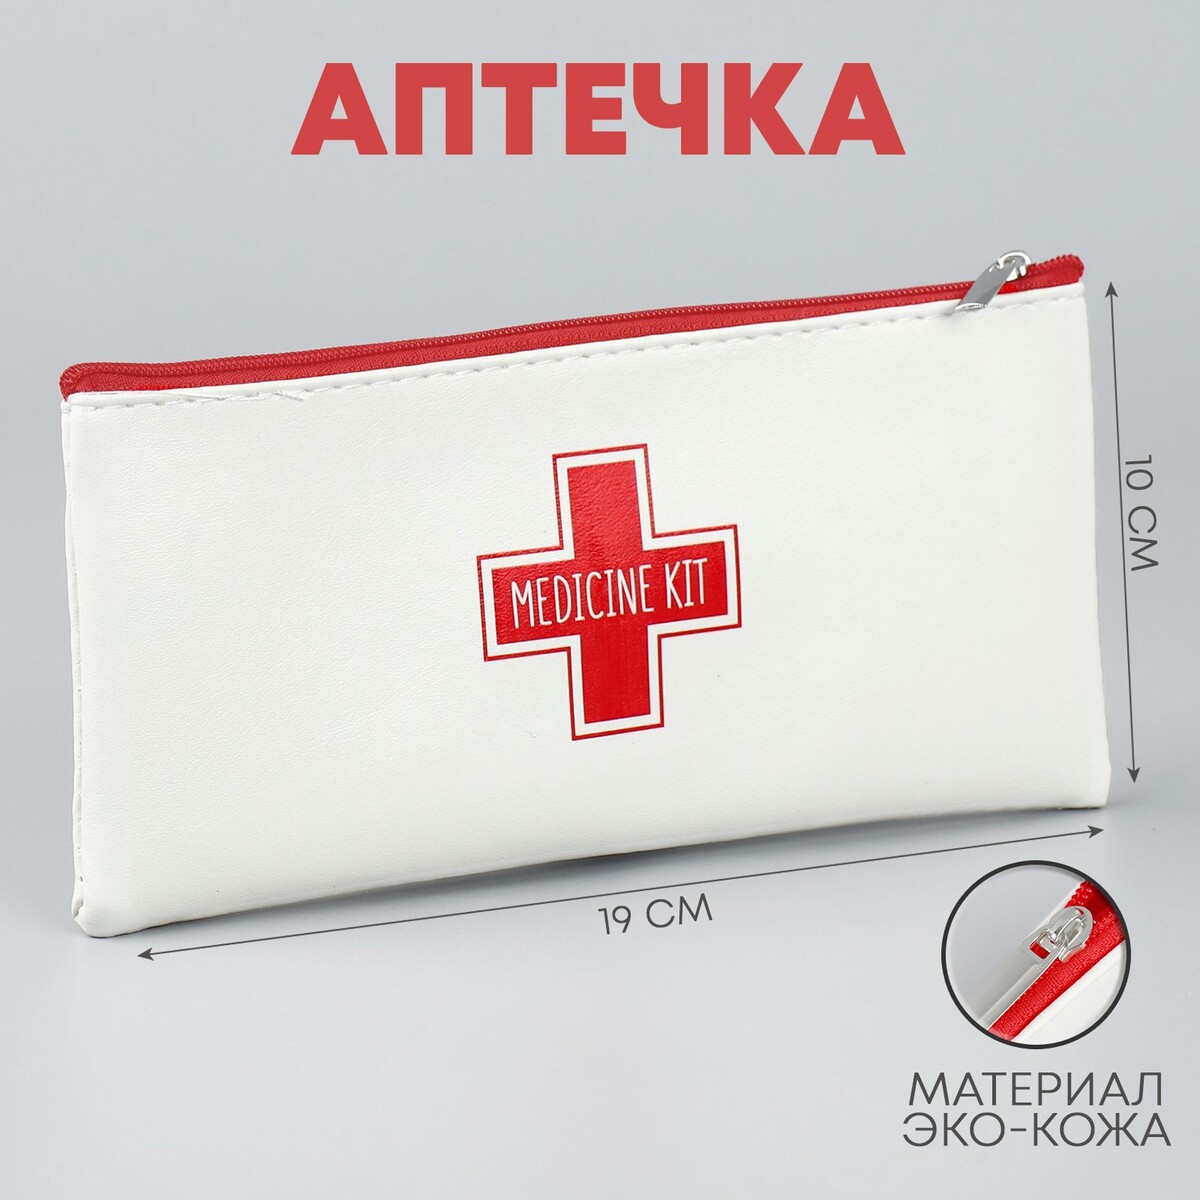 Аптечка medicine kit, 19х10 см